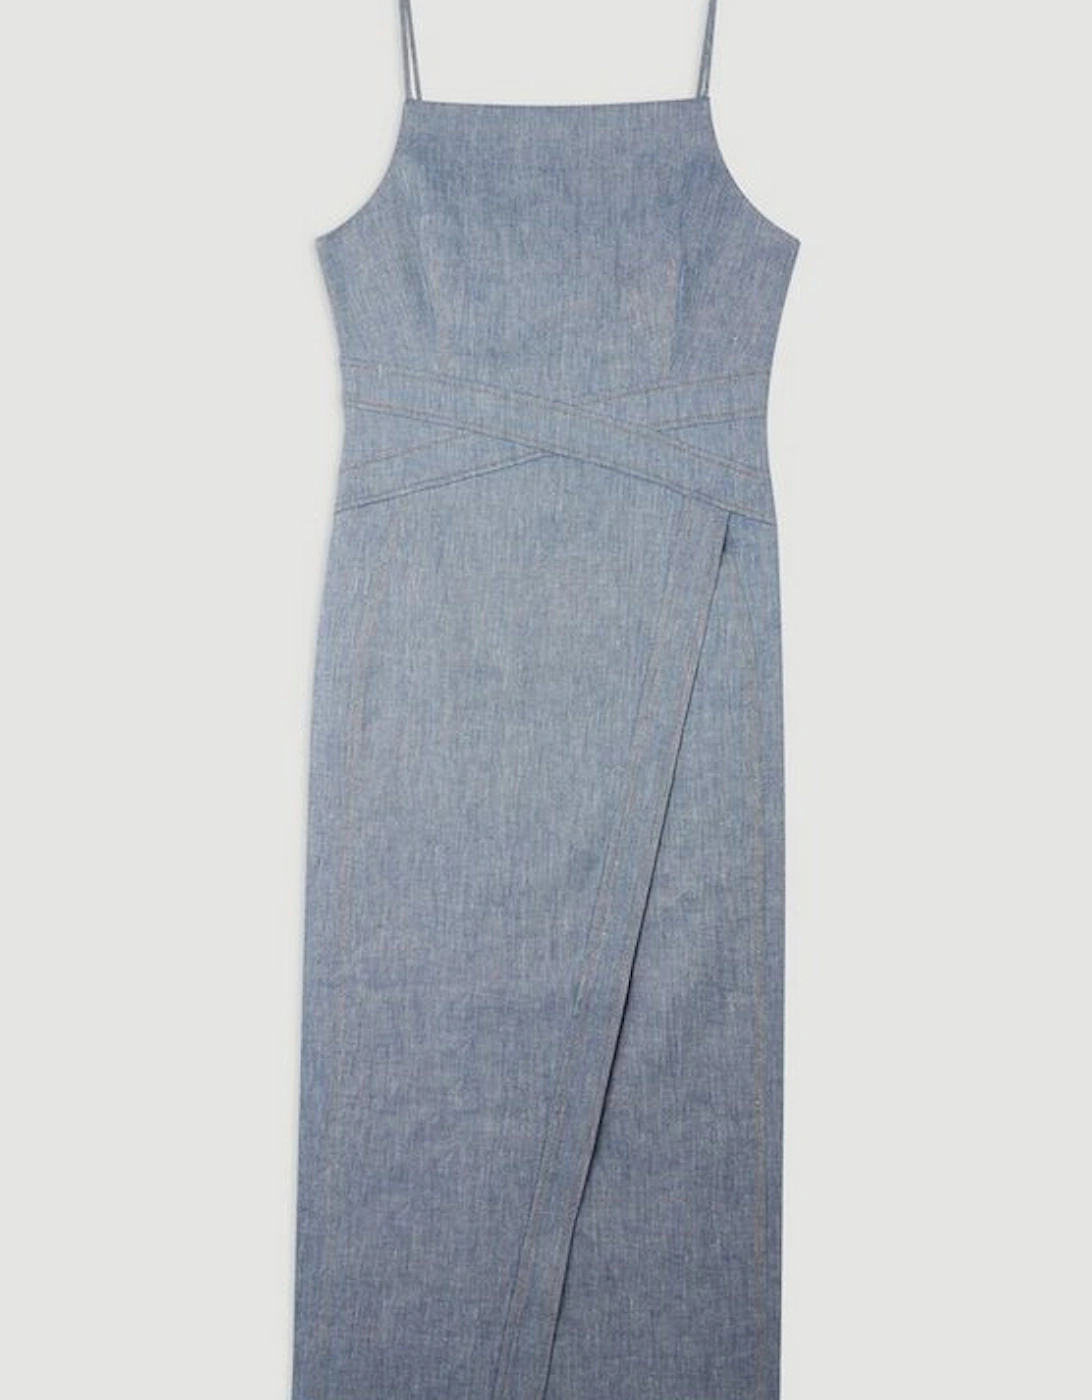 Tailored Denim Look Linen Strappy Pencil Midi Dress